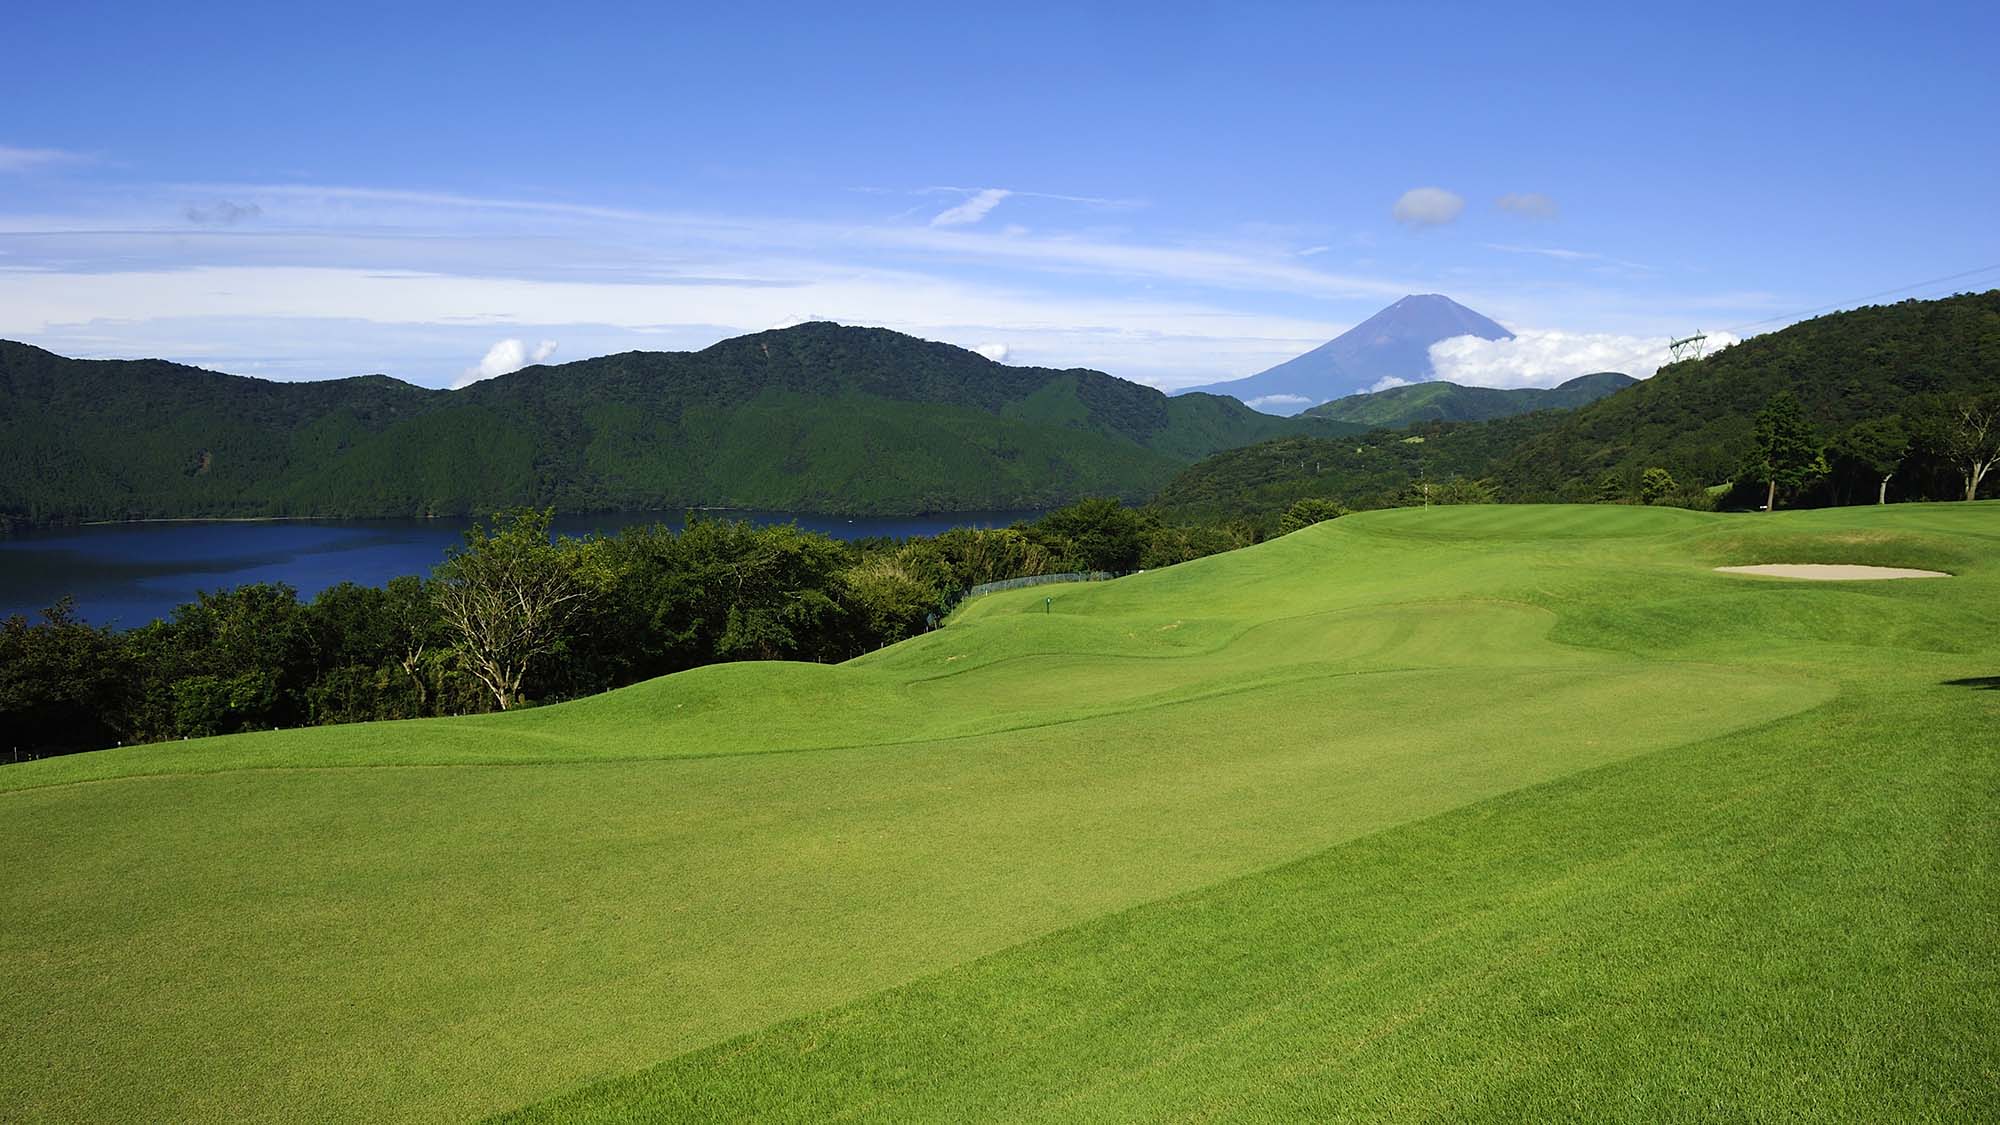 『箱根園ゴルフ場』コテージより車で5分。芦ノ湖と富士山を望む絶景ゴルフ場です。